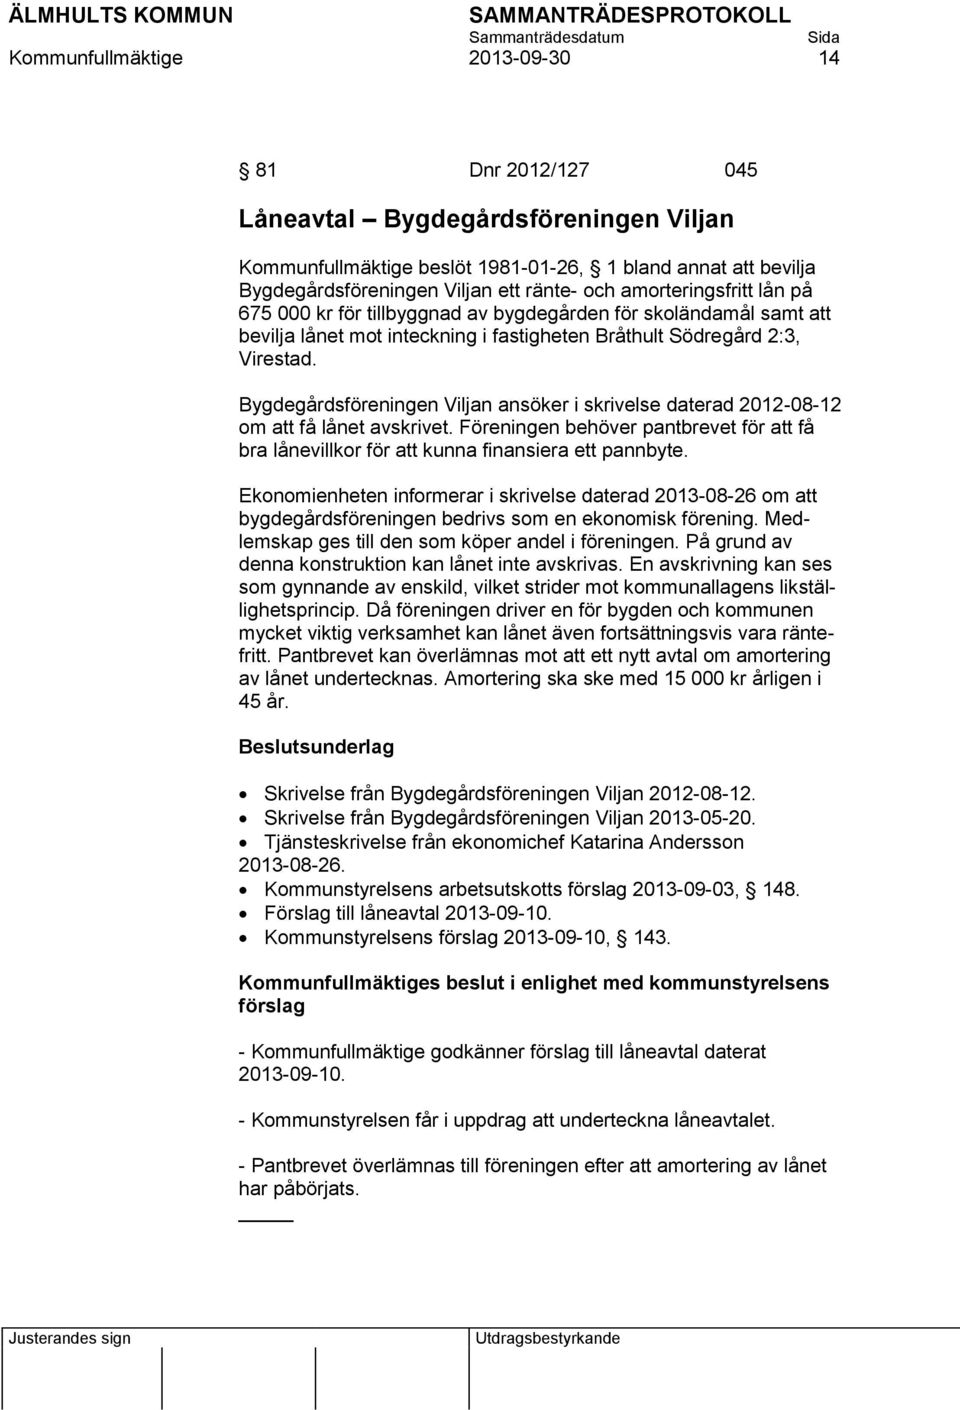 Bygdegårdsföreningen Viljan ansöker i skrivelse daterad 2012-08-12 om att få lånet avskrivet. Föreningen behöver pantbrevet för att få bra lånevillkor för att kunna finansiera ett pannbyte.